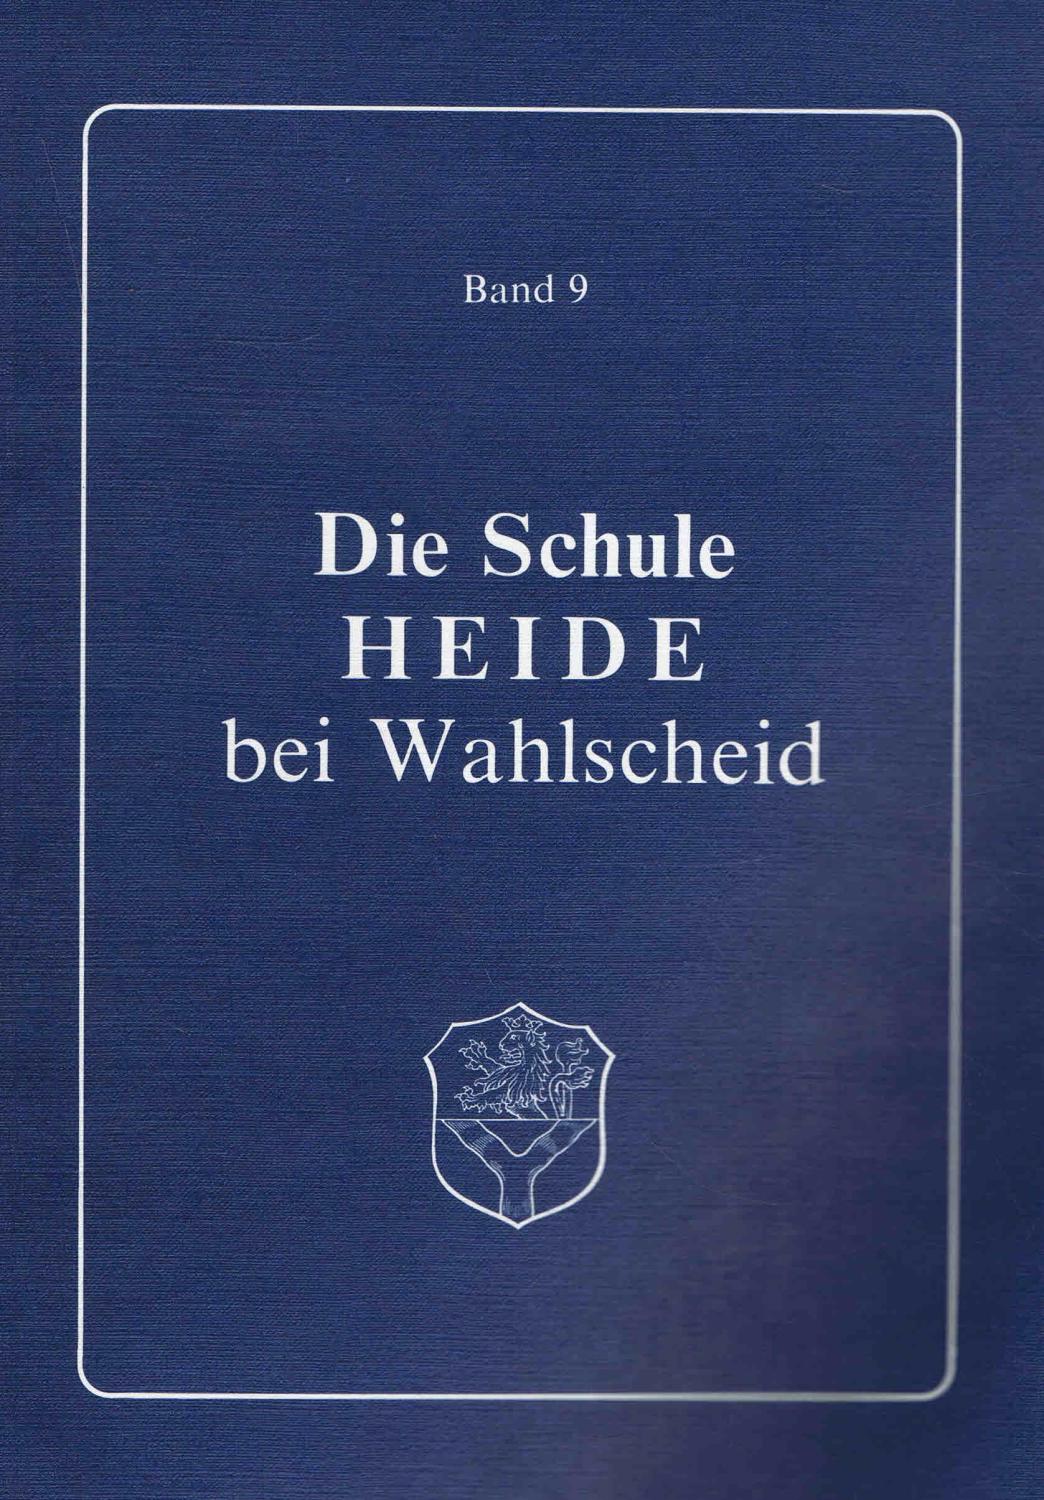 Die Schule Heide bei Wahlscheid Bd. 9 (1987) - WALTERSCHEID-MÜLLER, Bernhard